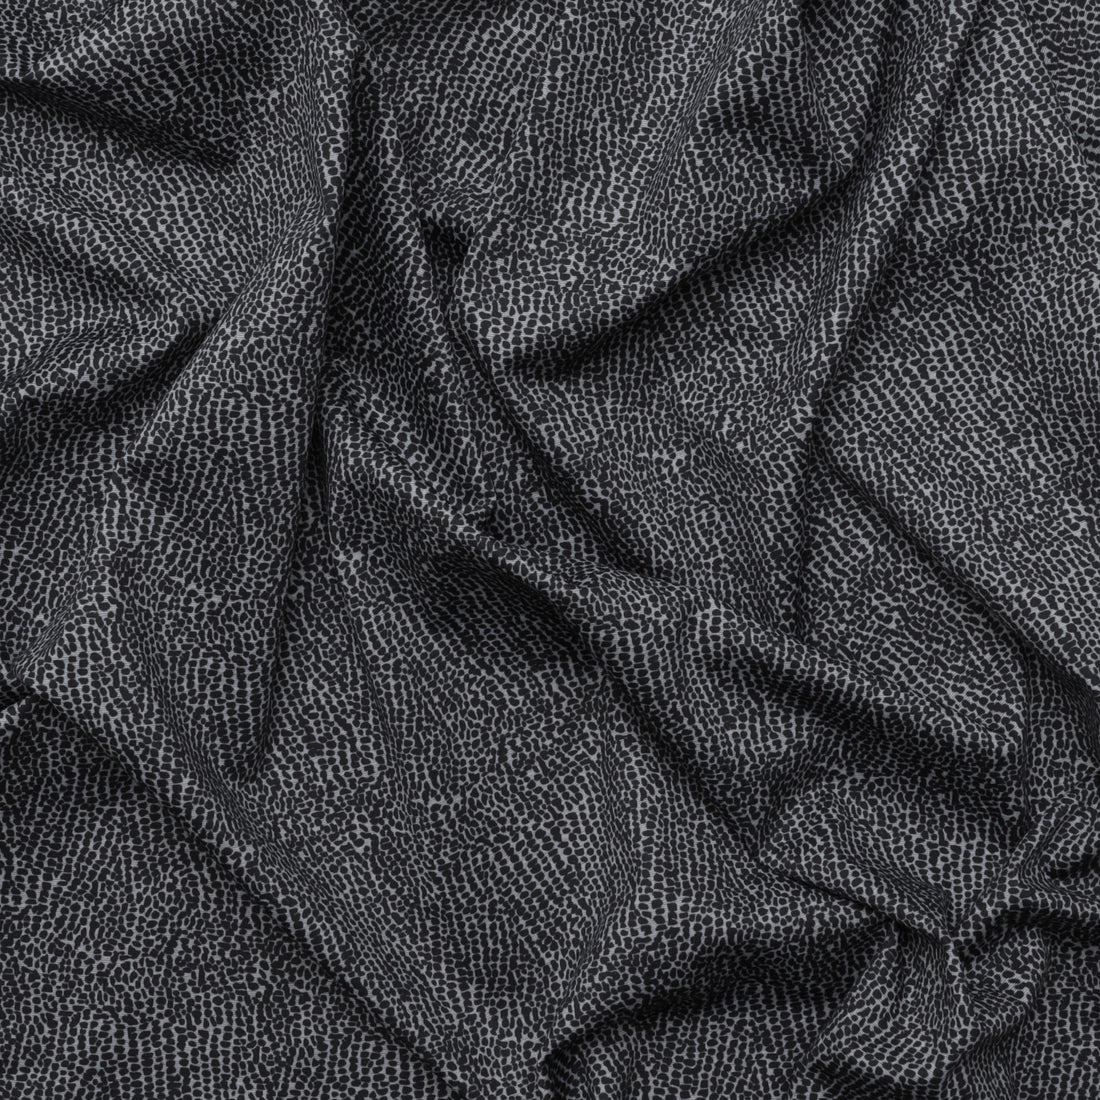 Rayon - Ponte Knit - Grey Black